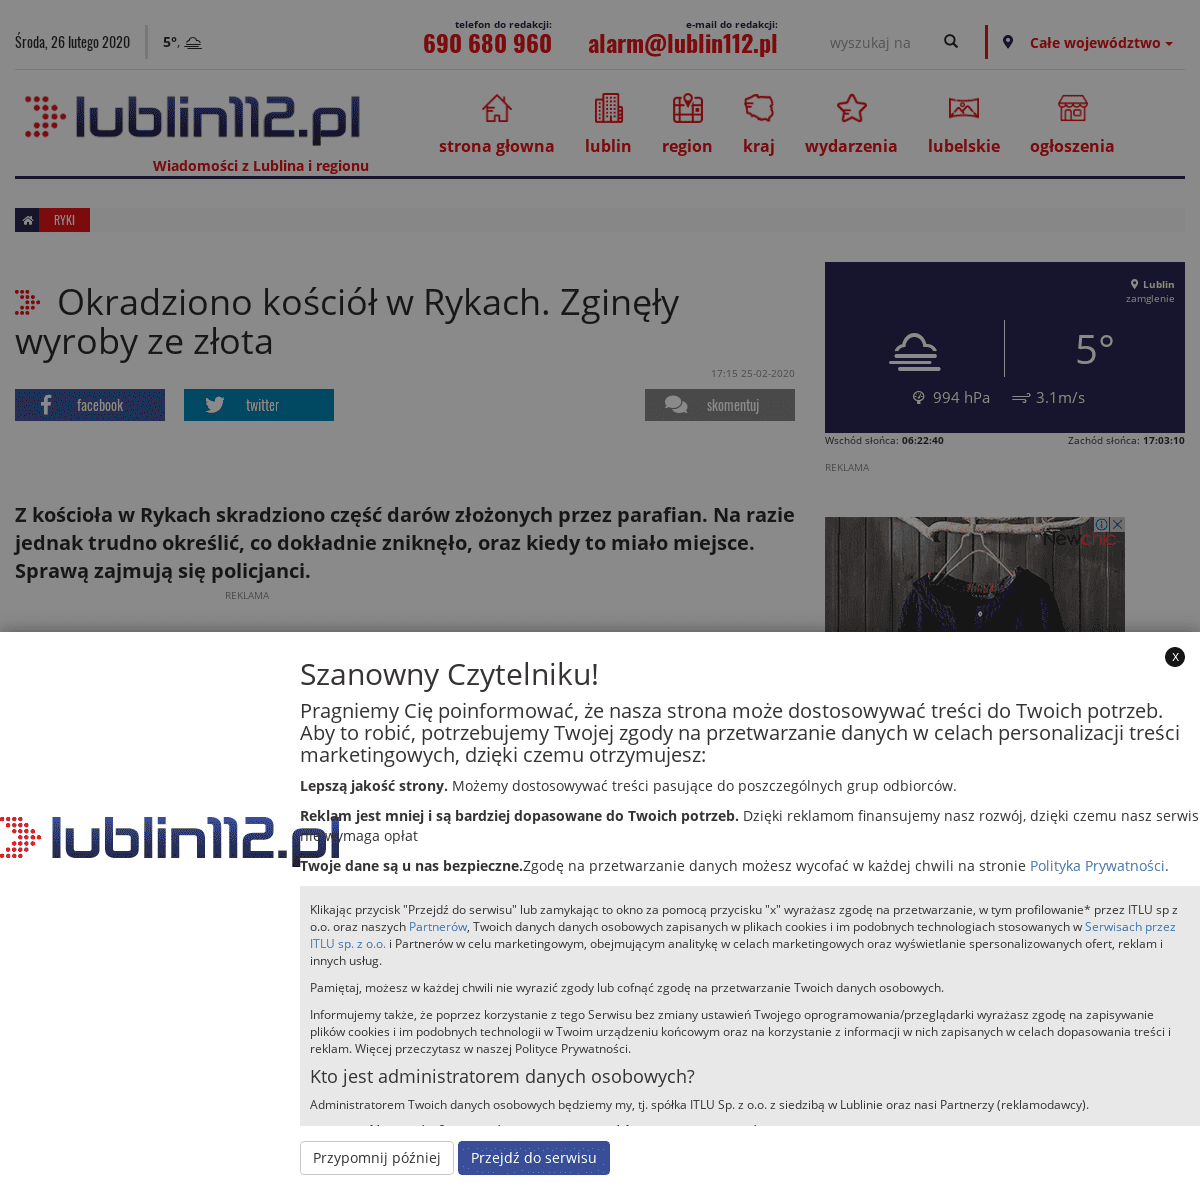 A complete backup of www.lublin112.pl/okradziono-kosciol-w-rykach-zginely-wyroby-ze-zlota/